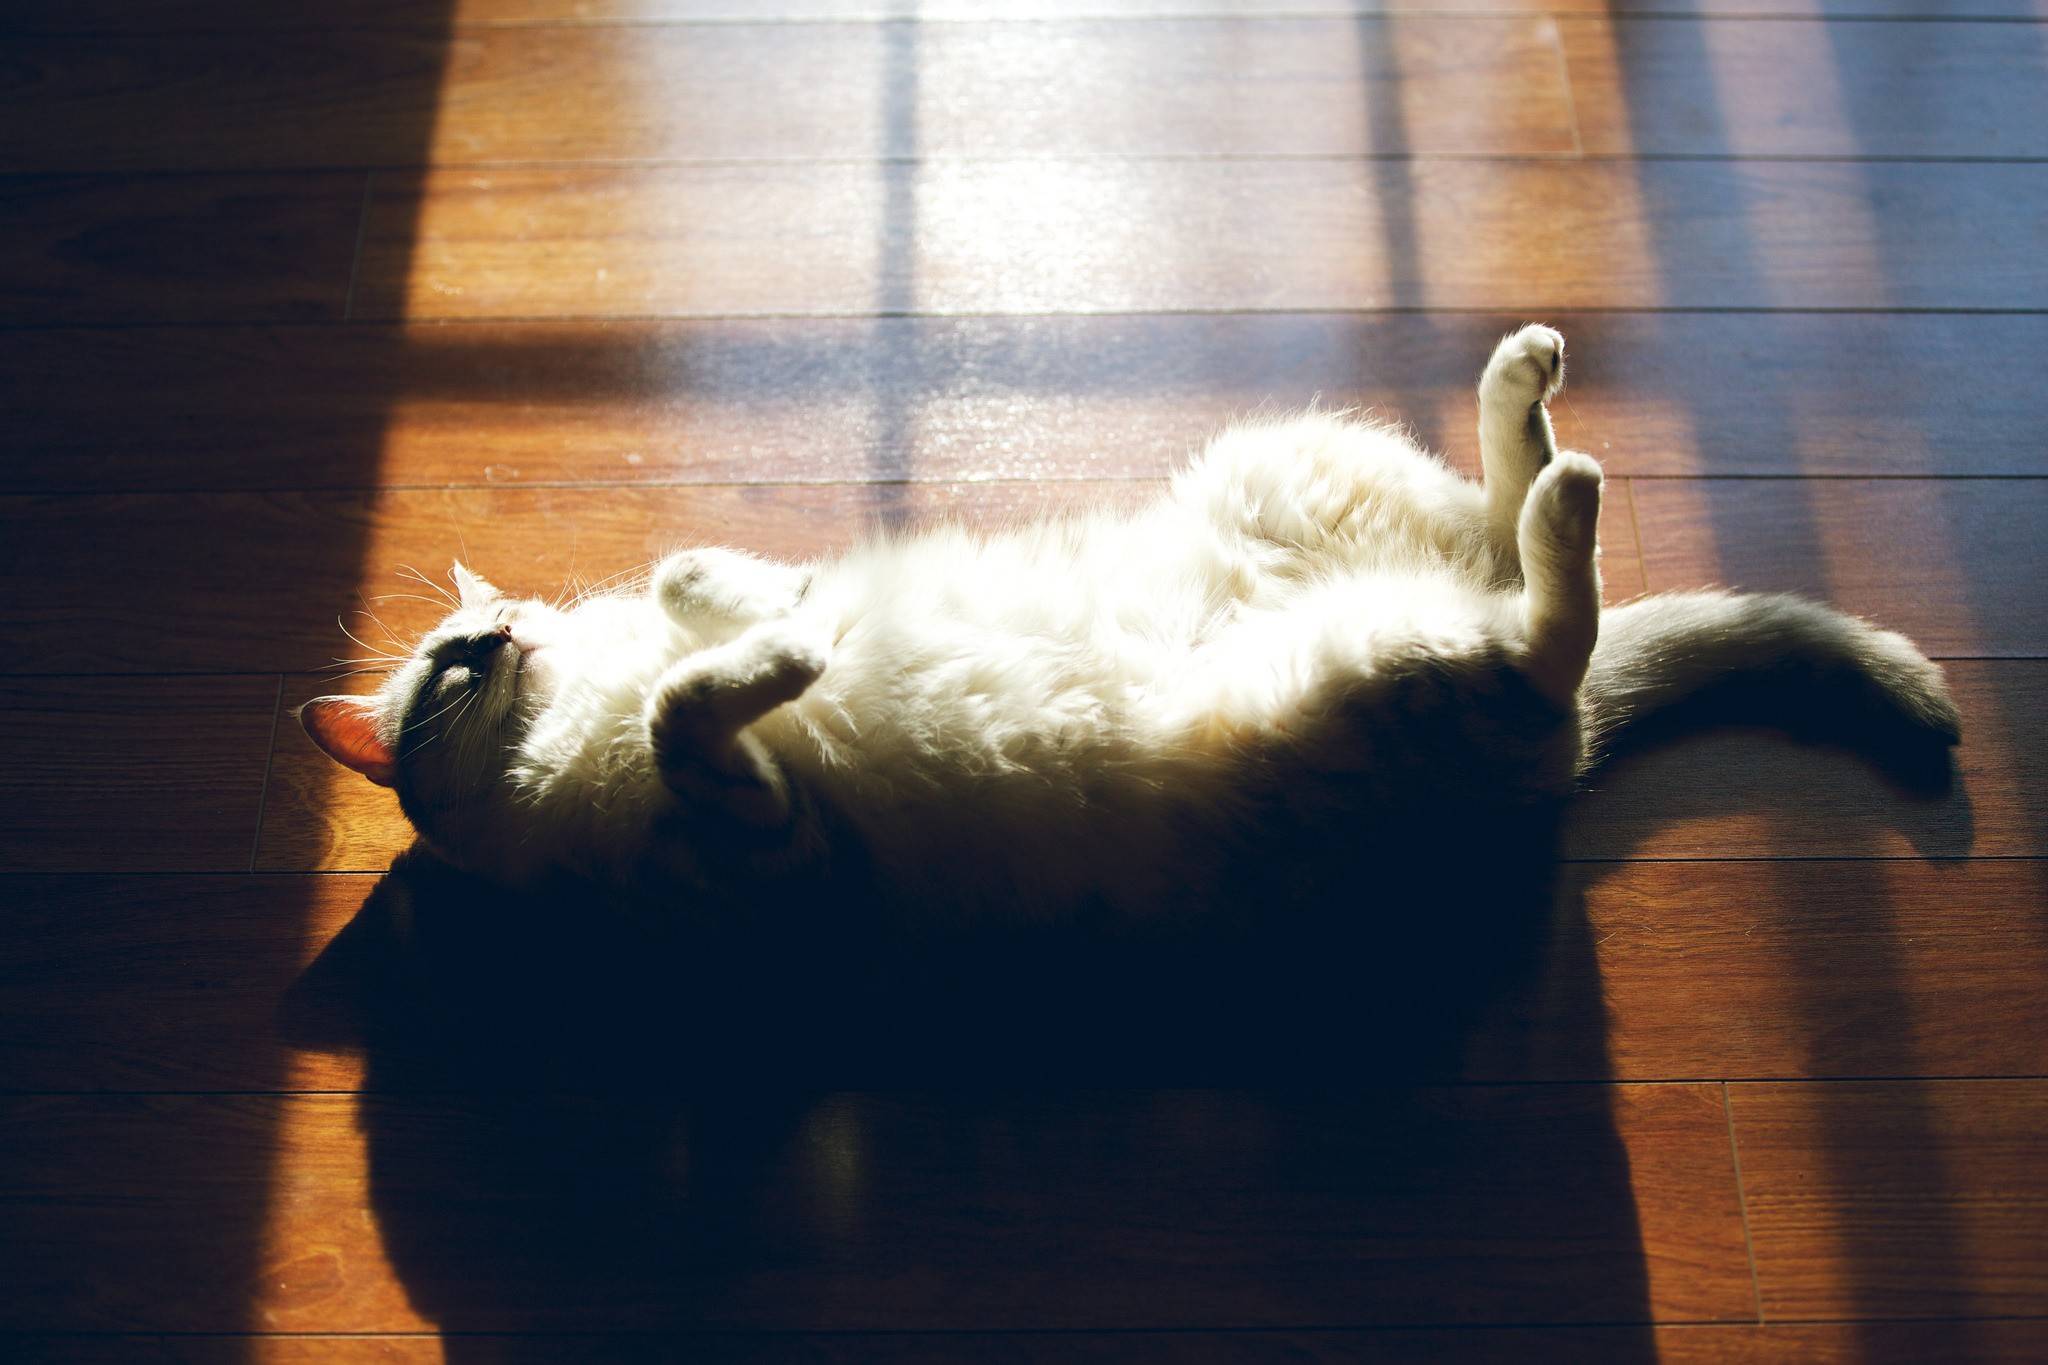 Положение кошки во время сна может многое рассказать о состоянии питомца - досуг